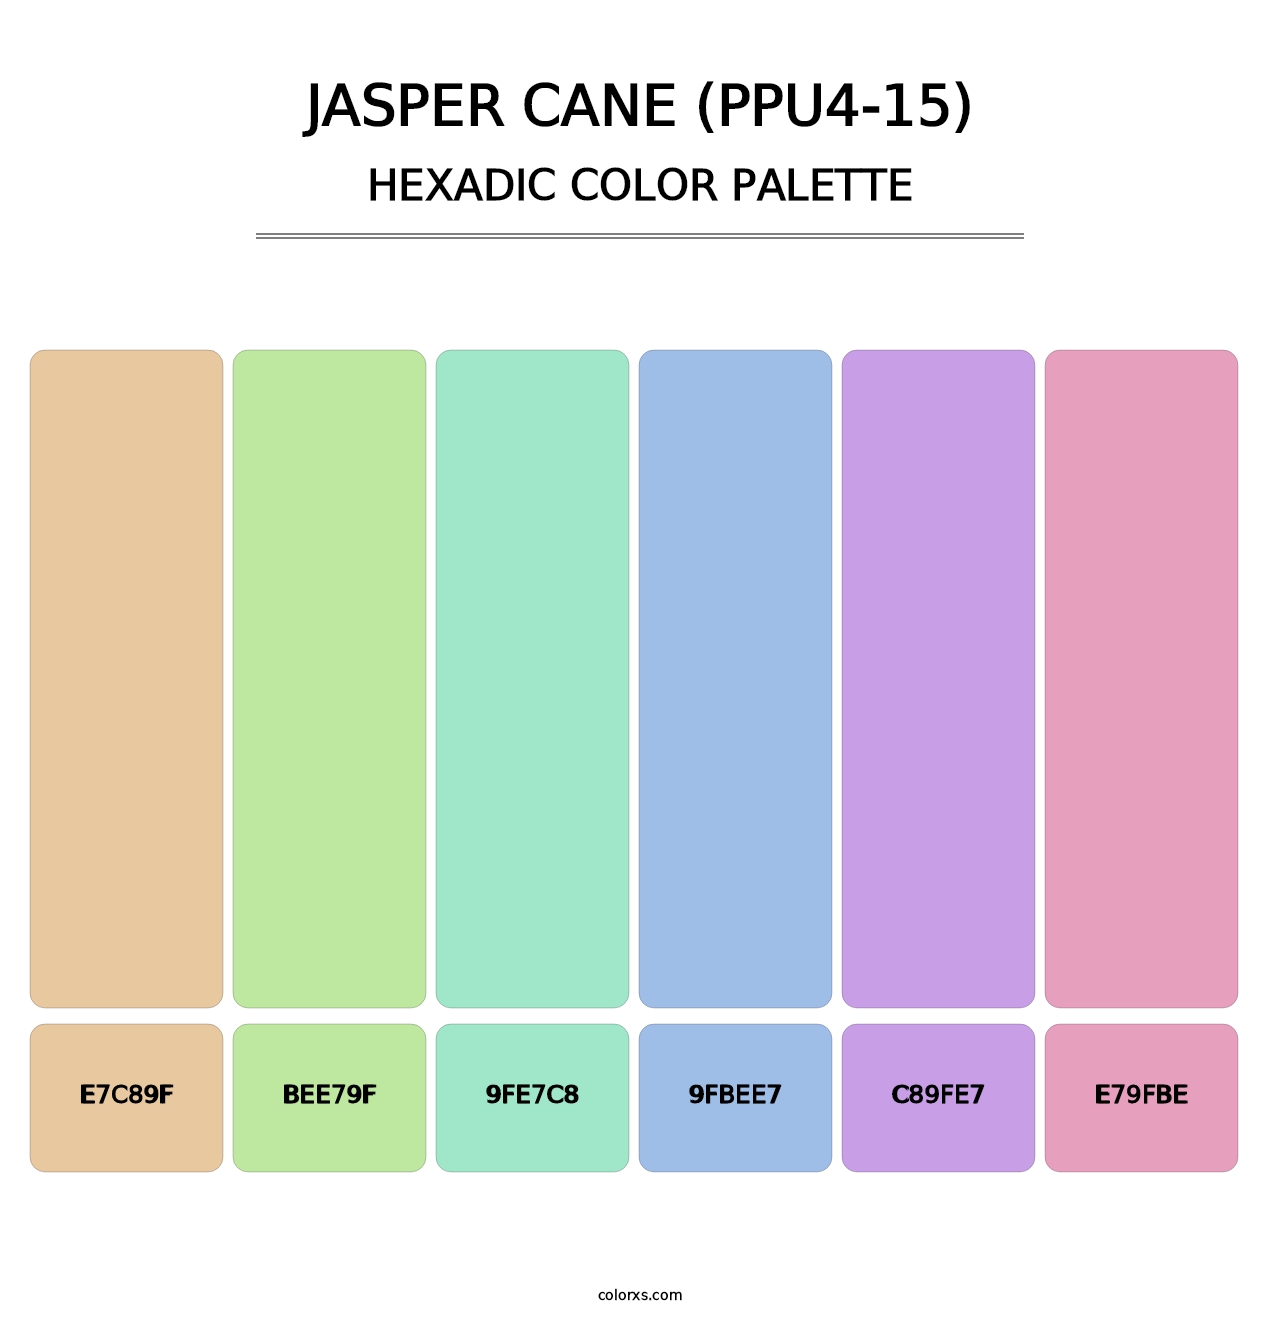 Jasper Cane (PPU4-15) - Hexadic Color Palette